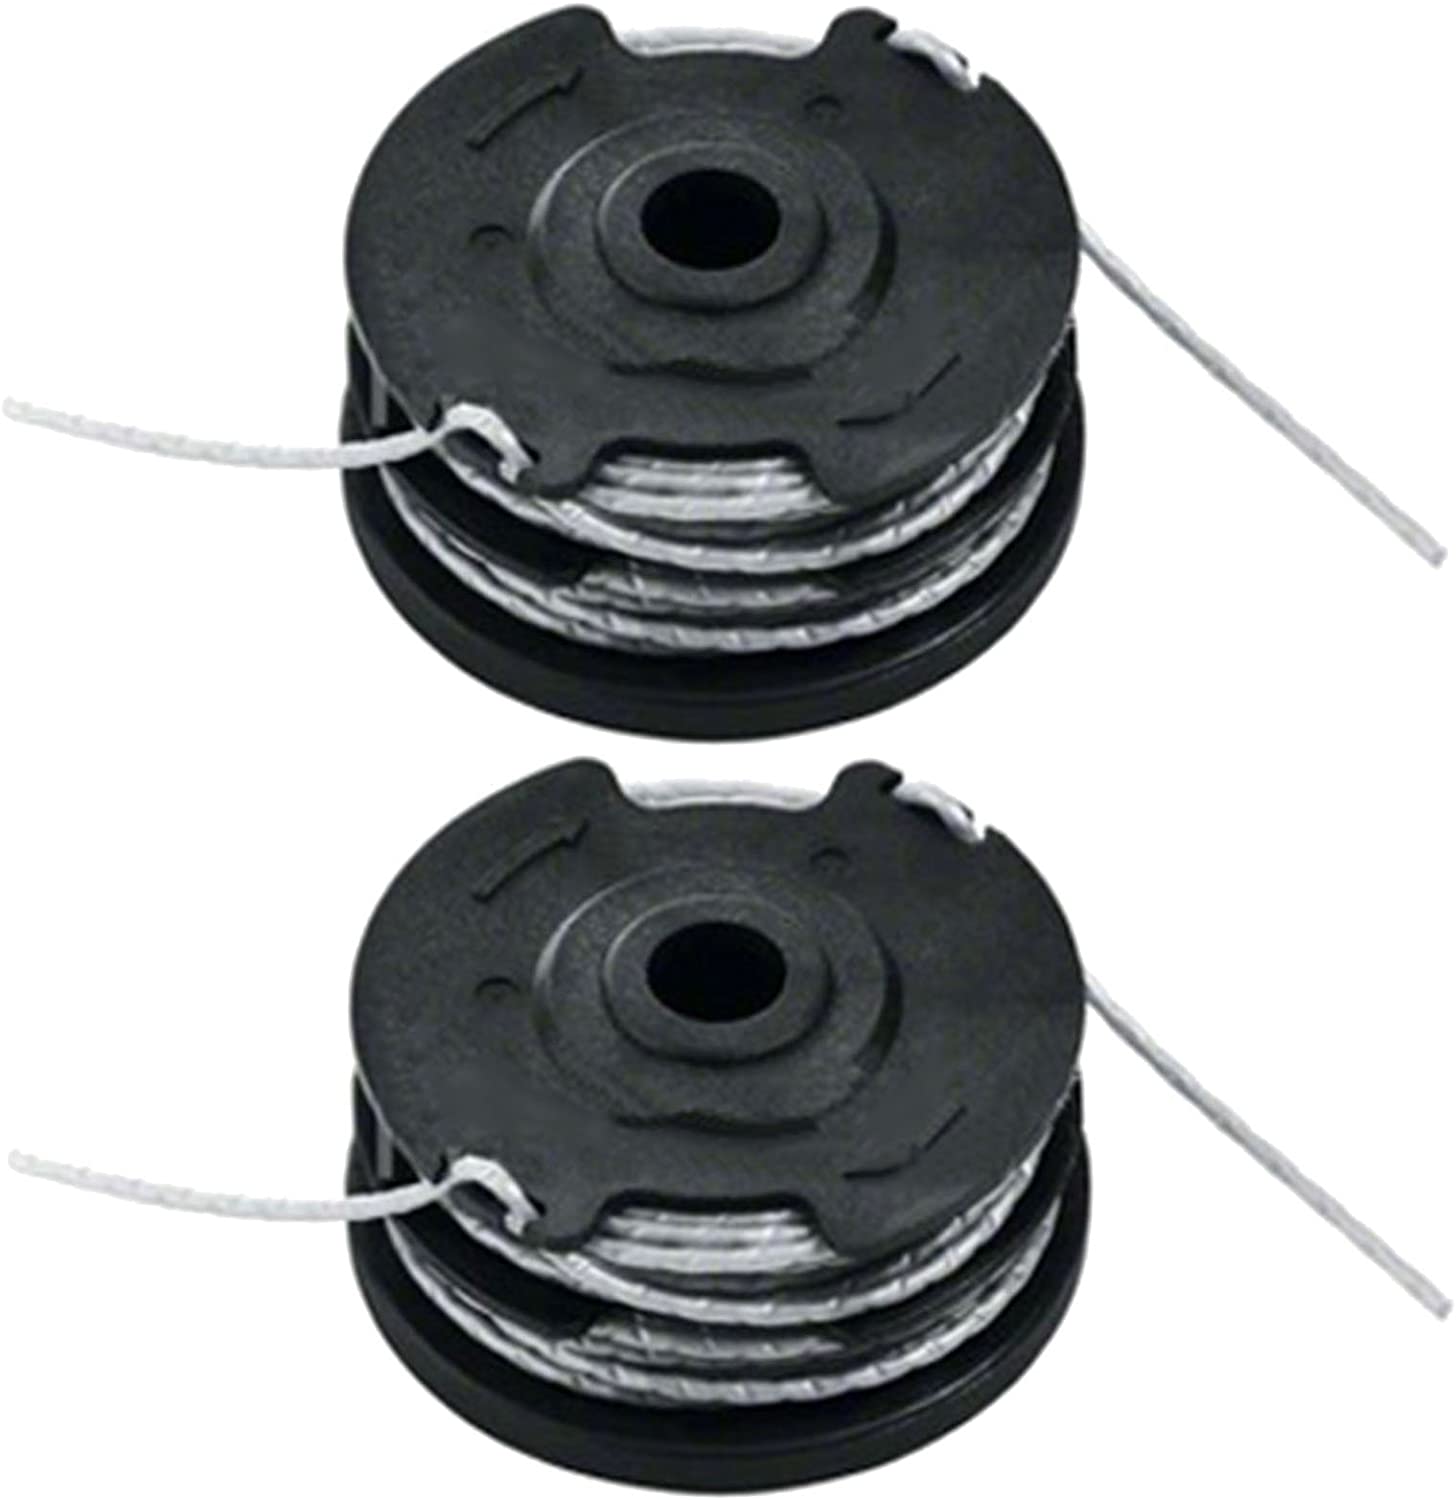 Bosch ART 24 27 30 30-36 LI Genuine Strimmer Trimmer Cutting Line Spool Feed 12m 1.6mm - F016800351